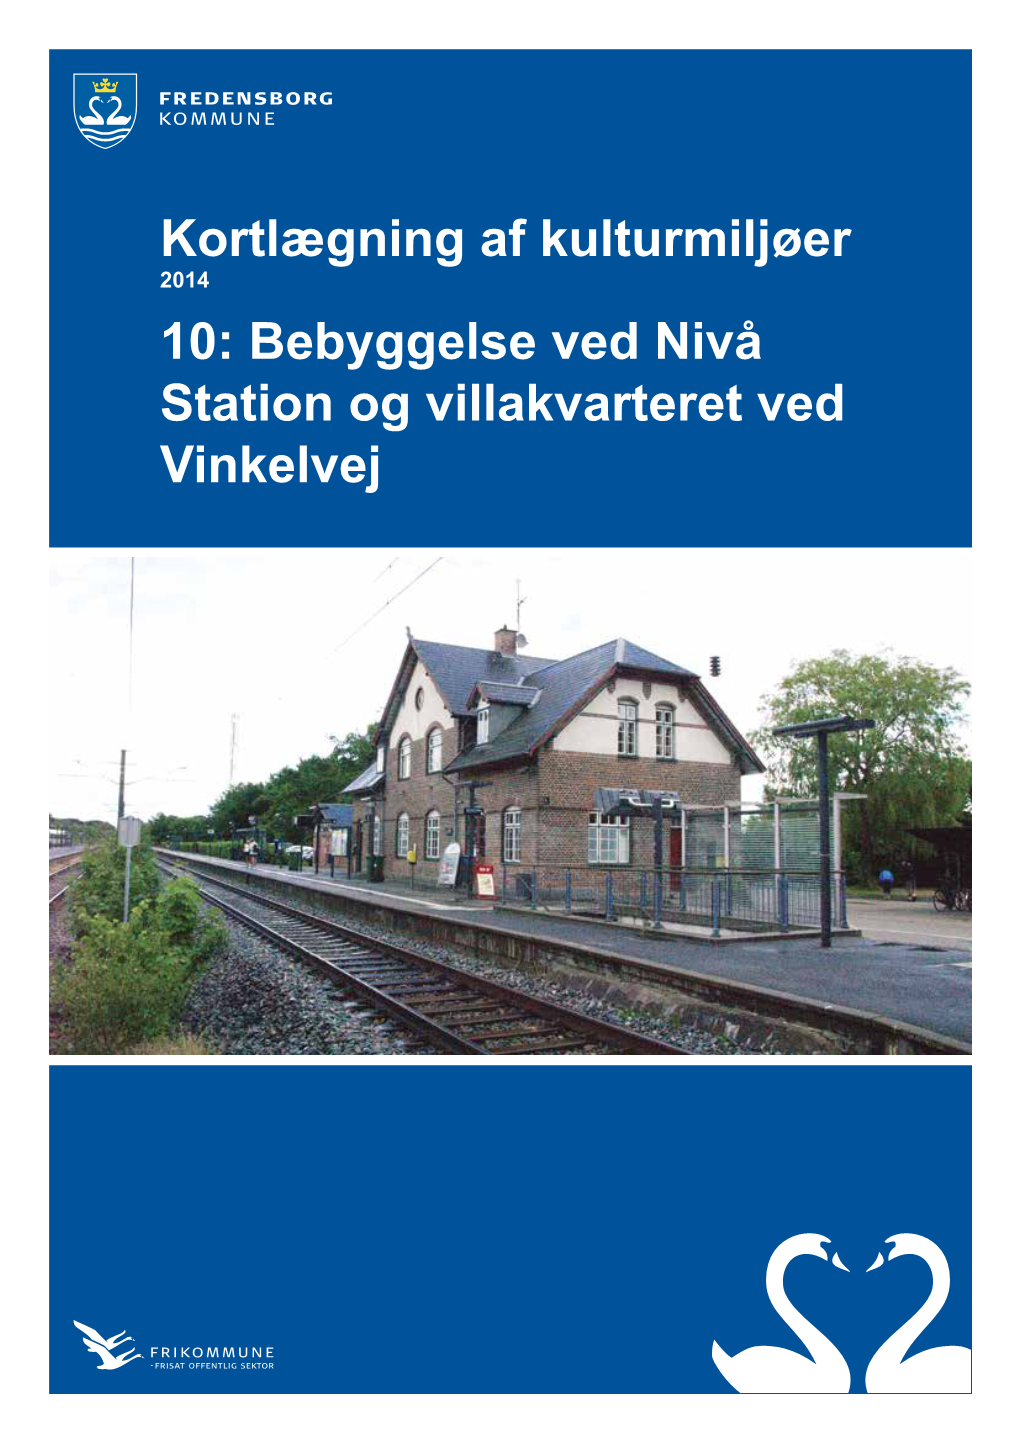 Bebyggelse Ved Nivå Station Og Villakvarteret Ved Vinkelvej Kolofon Udgivet November 2014